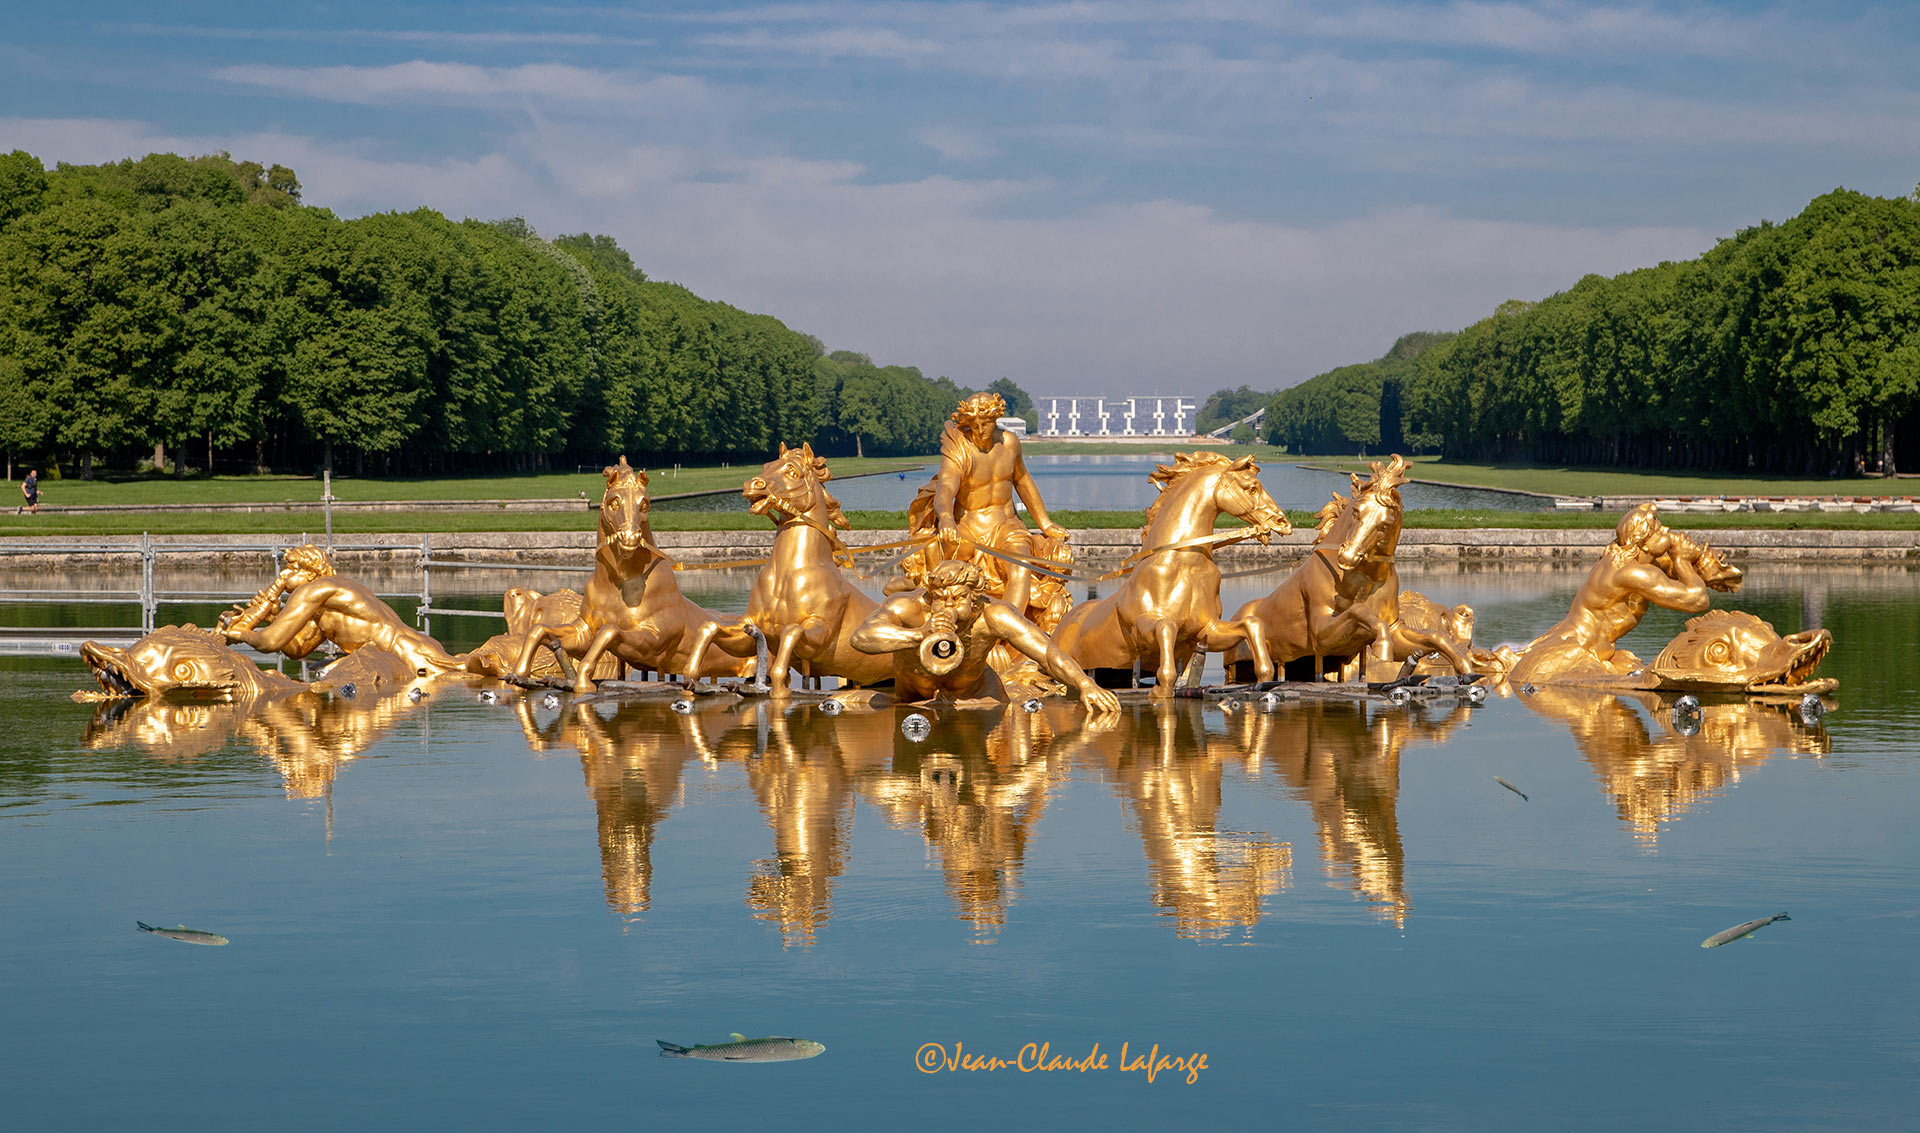 Les sculptures du Bassin du Char d'Apollon fraichement redorées dans le Petit Parc du Château de Versailles. Tout au fond, on aperçoit les tribunes pour les spectateurs des épreuves d'équitation des Jeaux Olympiques 2024.